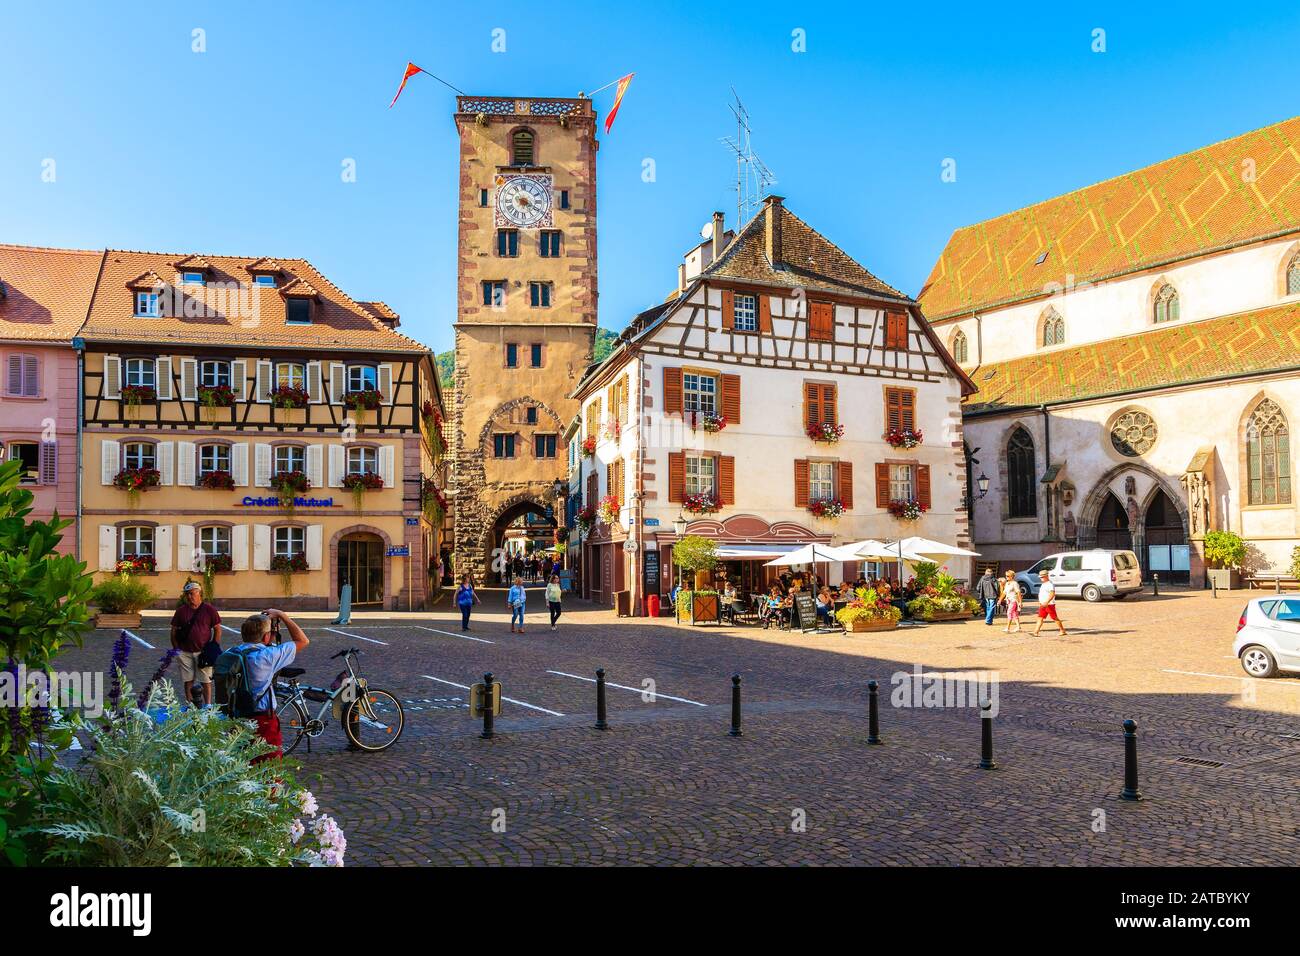 Regione VINICOLA dell'Alsazia, FRANCIA - 20 SETTEMBRE 2019: Piazza della città e case colorate a Ribeauville, che è famosa località situata sulla strada del vino alsaziano, Francia Foto Stock